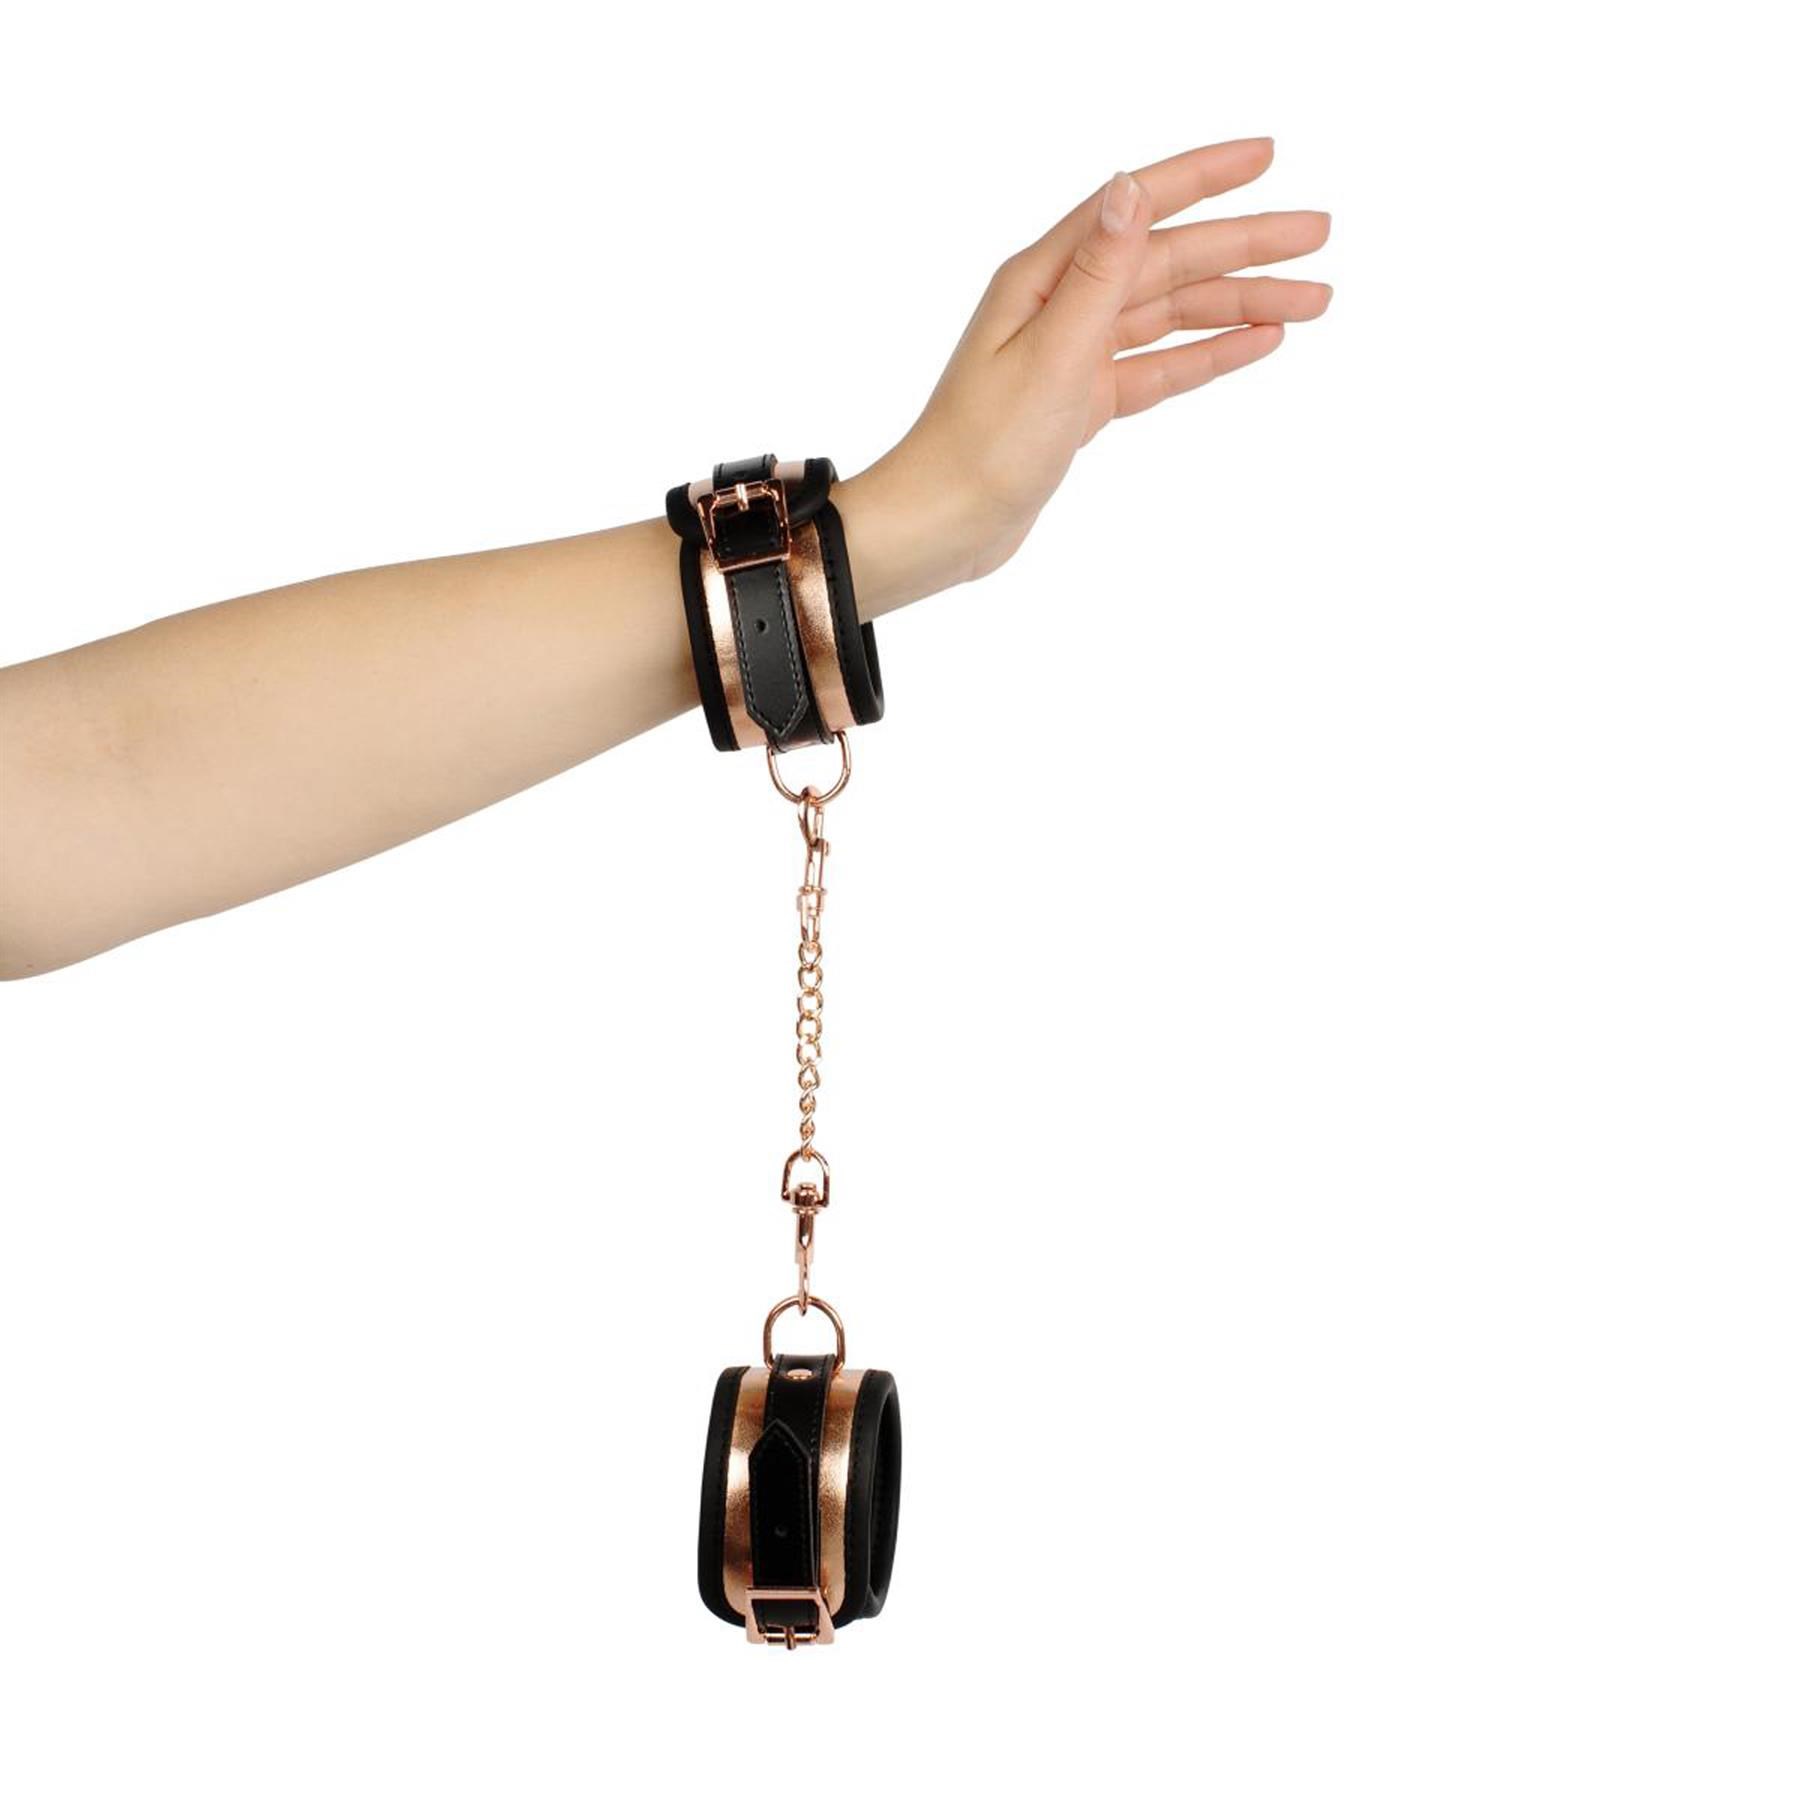 Rosy Gold Nouveau Kinky Bondage Set - Wrist Cuffs on Model